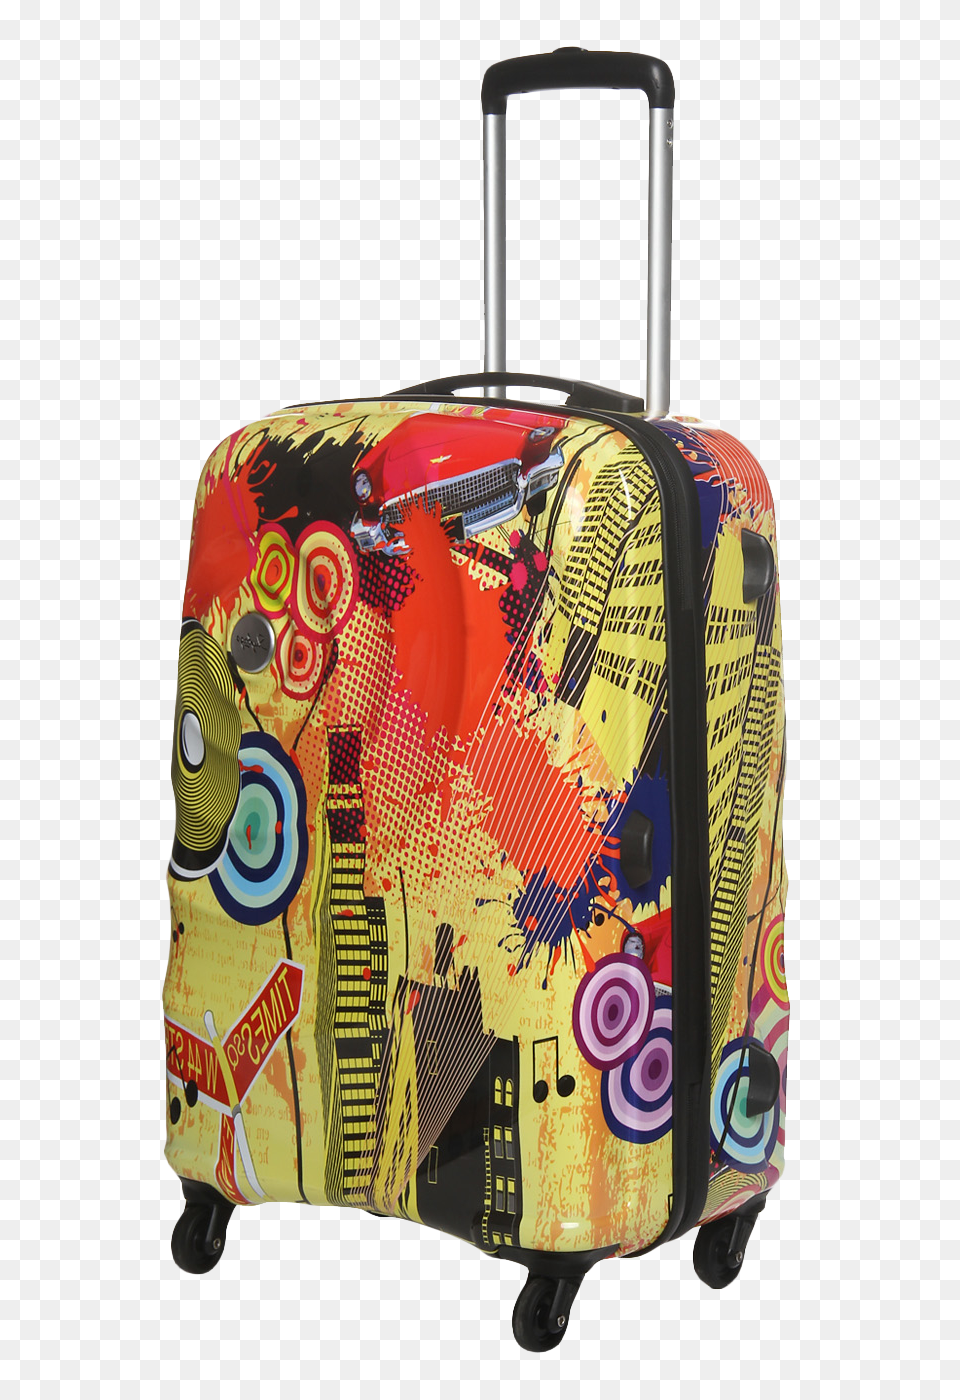 Pngpix Com Strolley Bag Transparent Image, Baggage, Suitcase, Car, Transportation Free Png Download